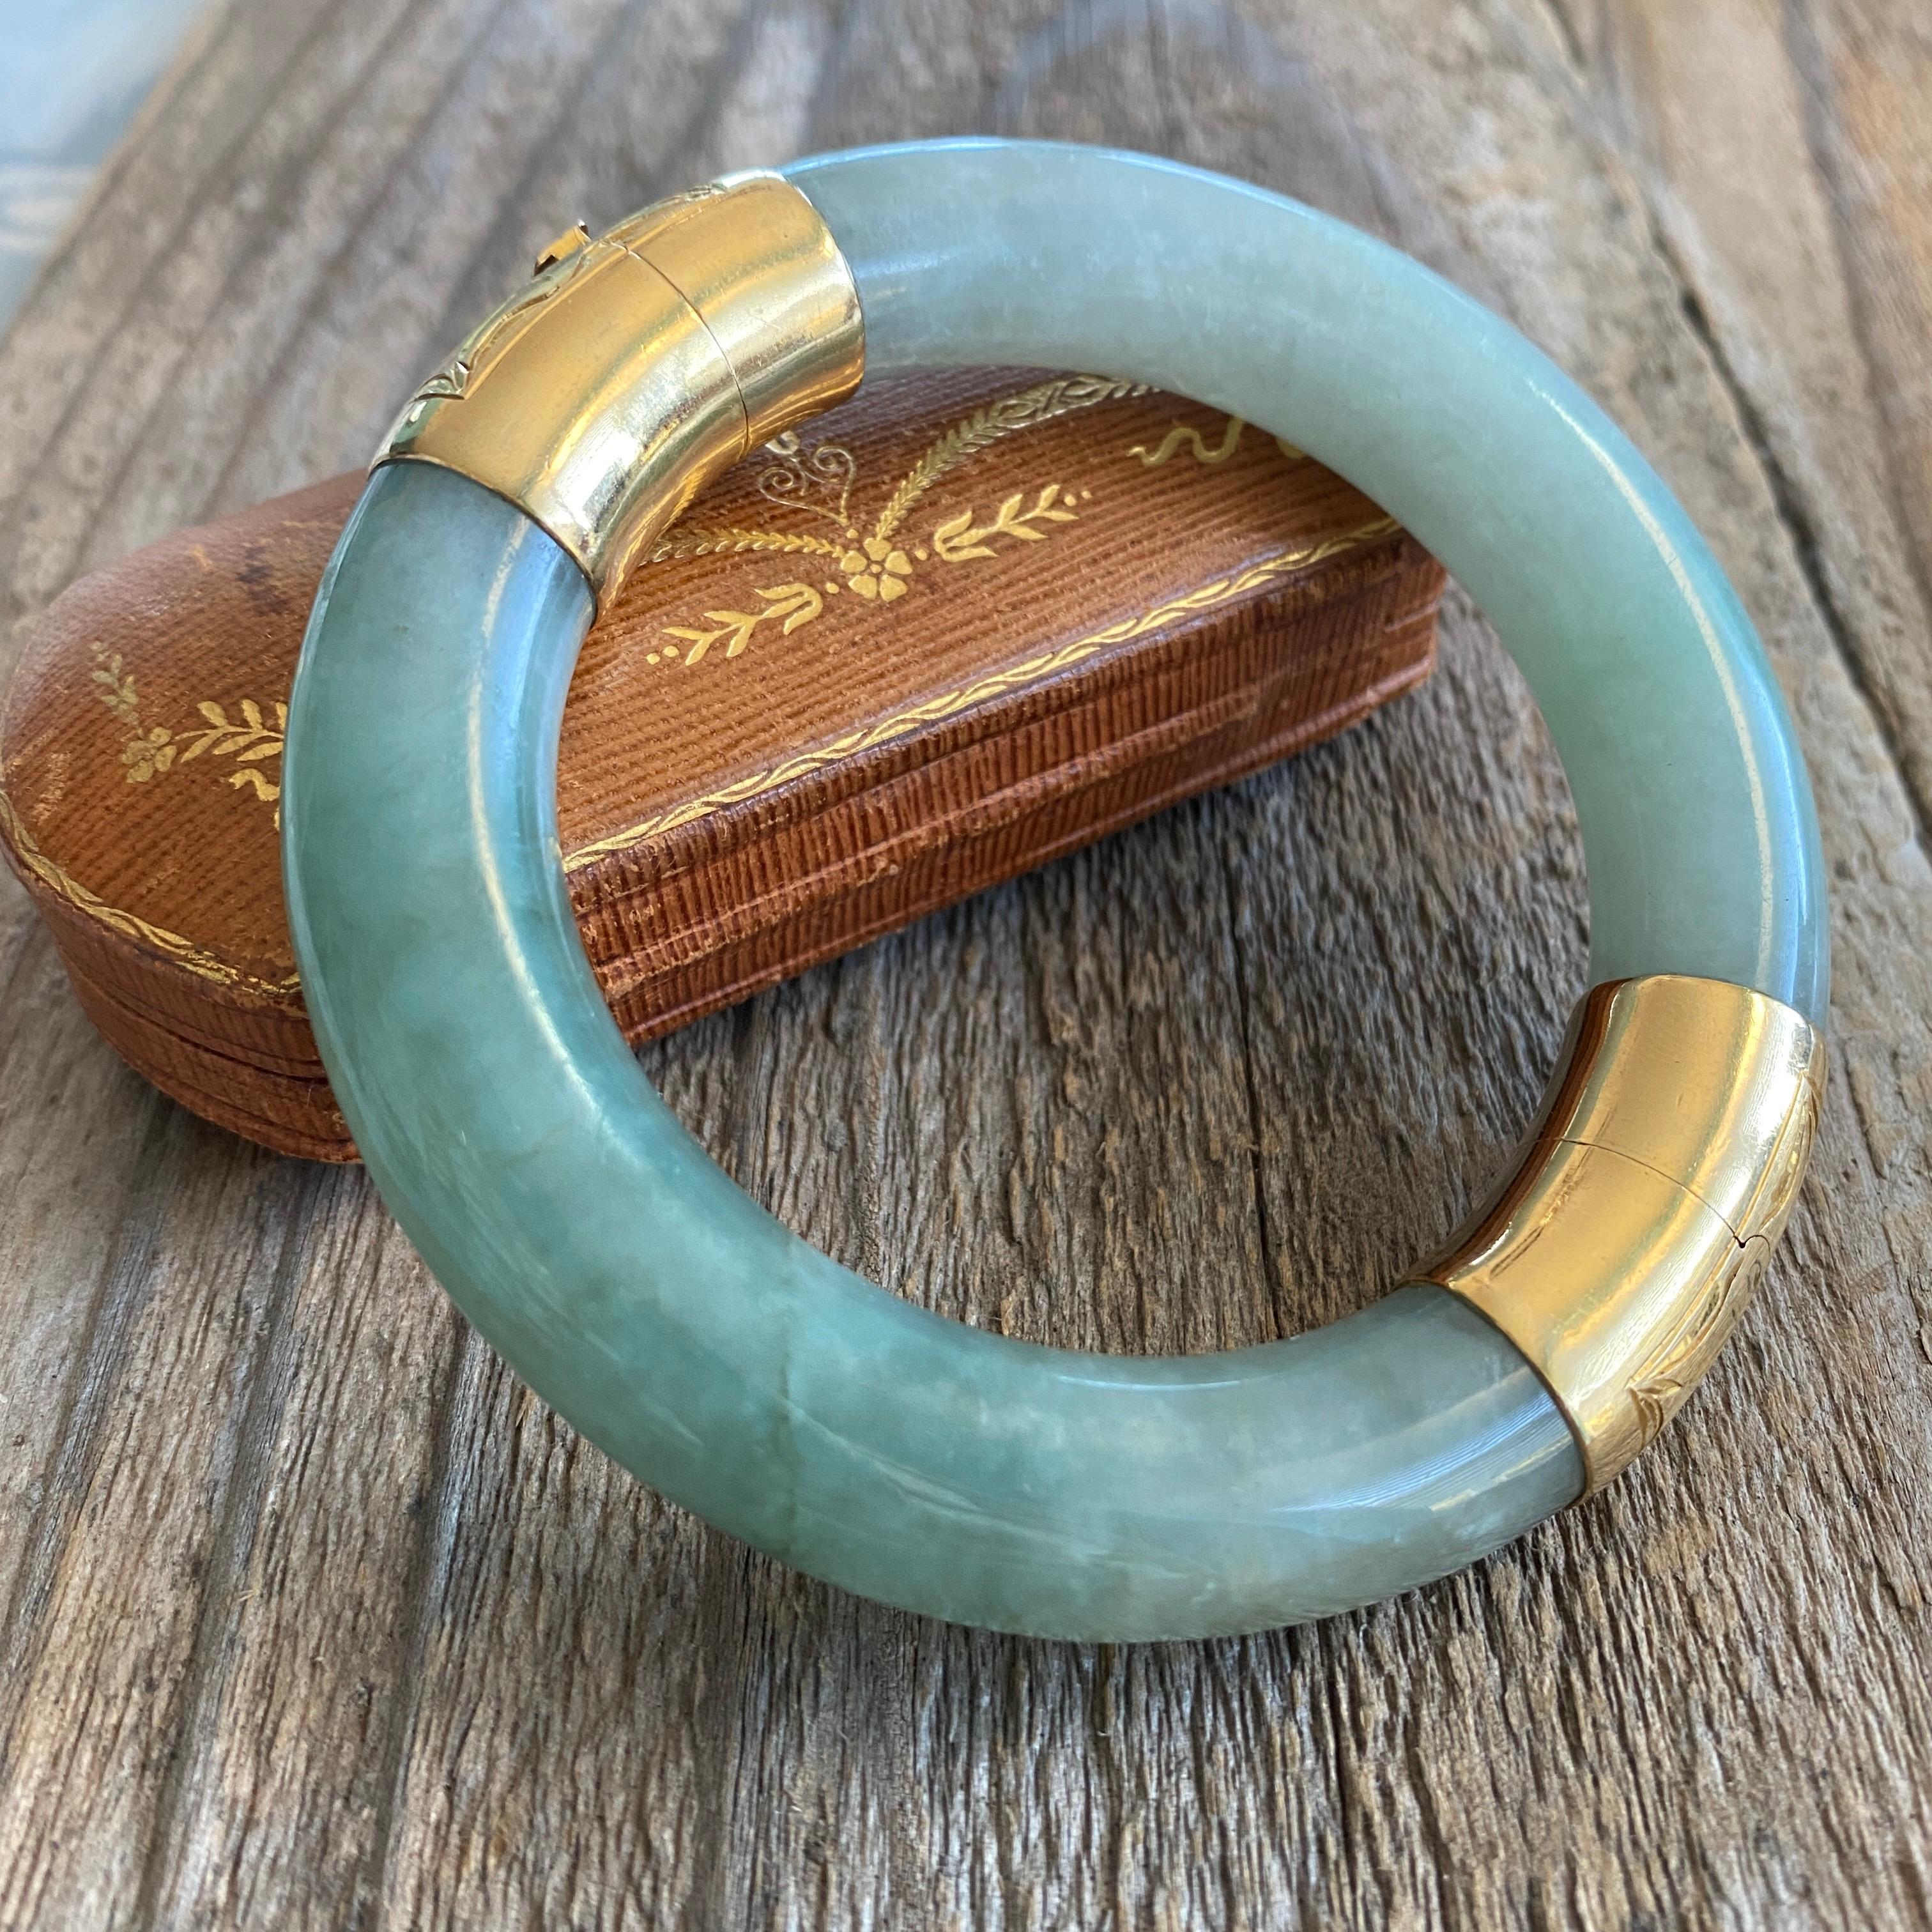 Détails :
Fabuleux bracelet bangle vintage lourd en Jade vert avec un fermoir et une charnière en or 14K. Bracelet en jade vert du milieu du siècle avec de belles marbrures. Il est muni d'un fermoir solide et d'une chaîne de sécurité. Le bracelet